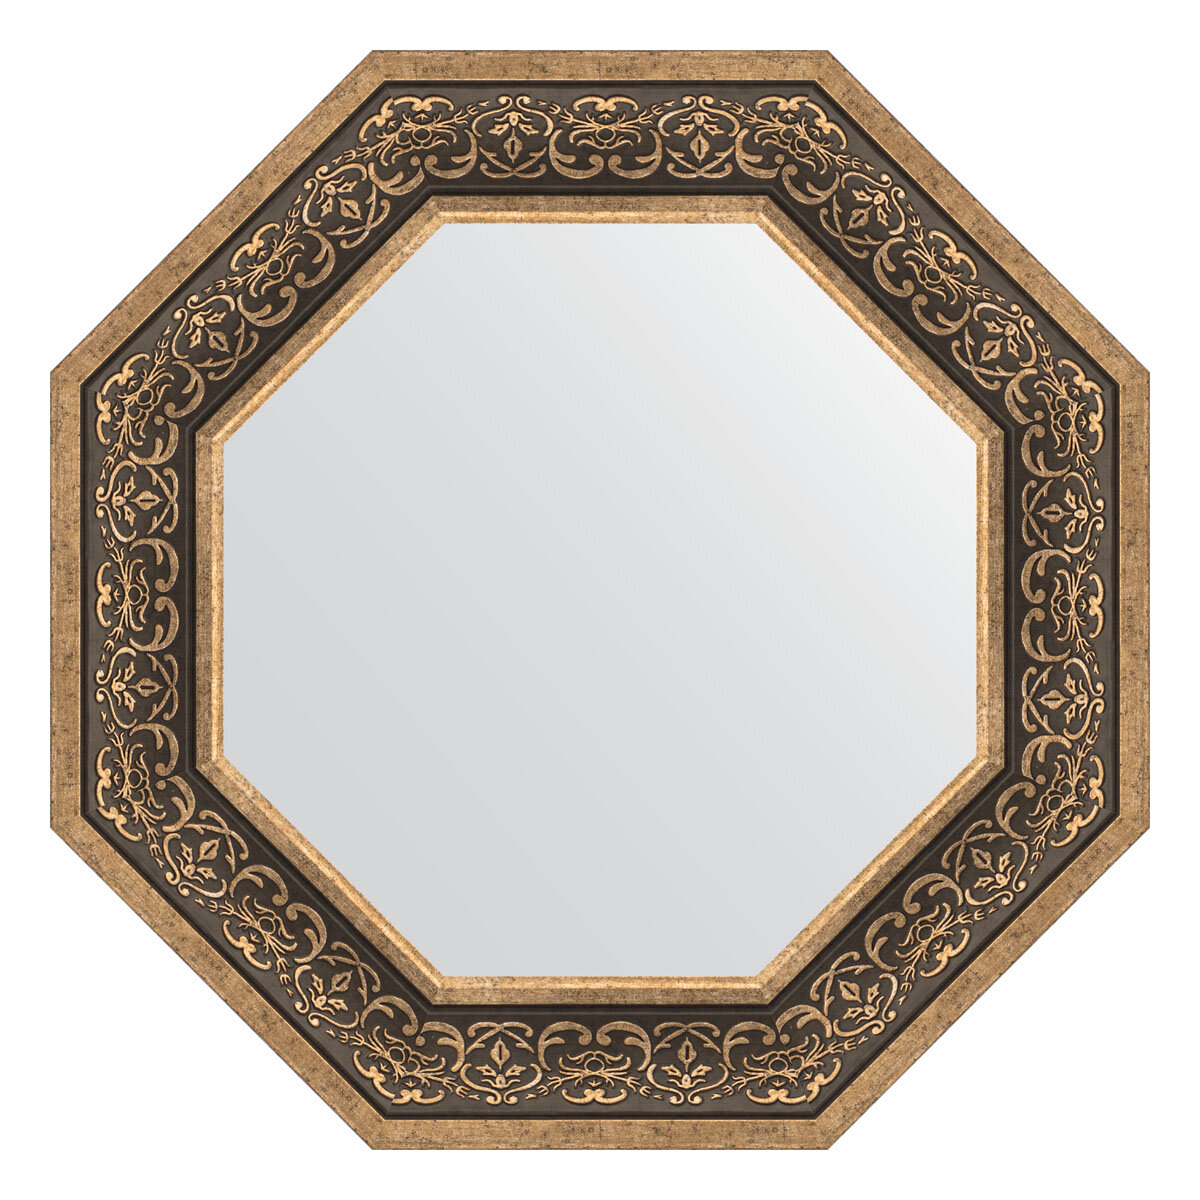 Зеркало настенное Octagon EVOFORM в багетной раме вензель серебряный, 64х64 см, для гостиной, прихожей, кабинета, спальни и ванной комнаты, BY 7378